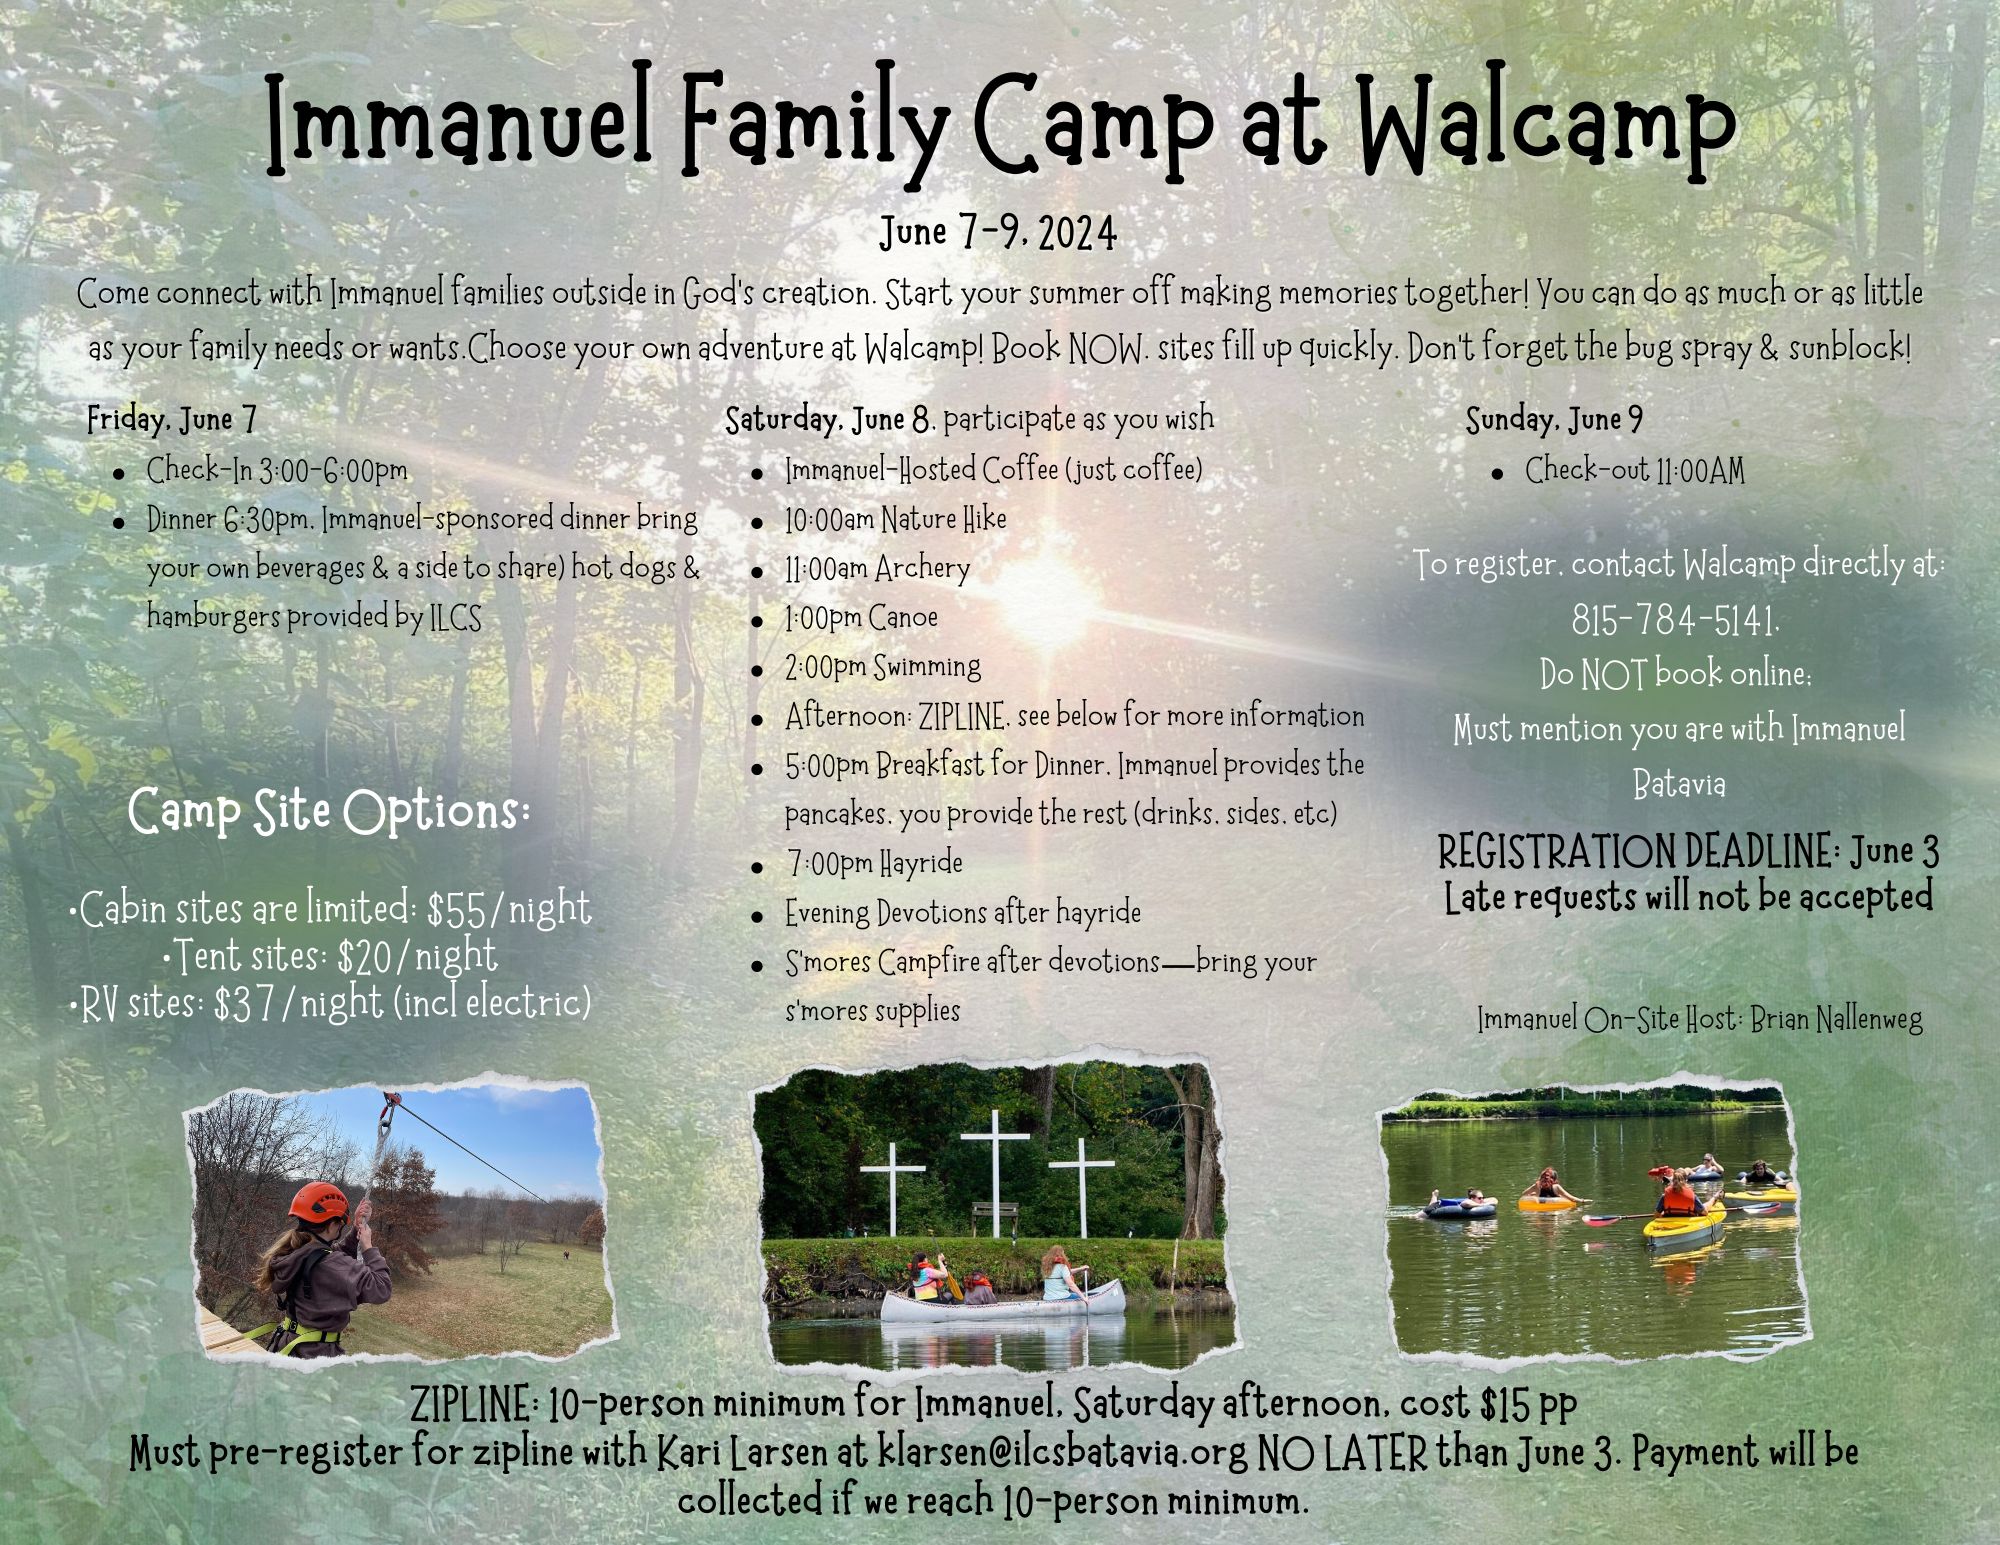 Immanuel Family Camp at Walcamp